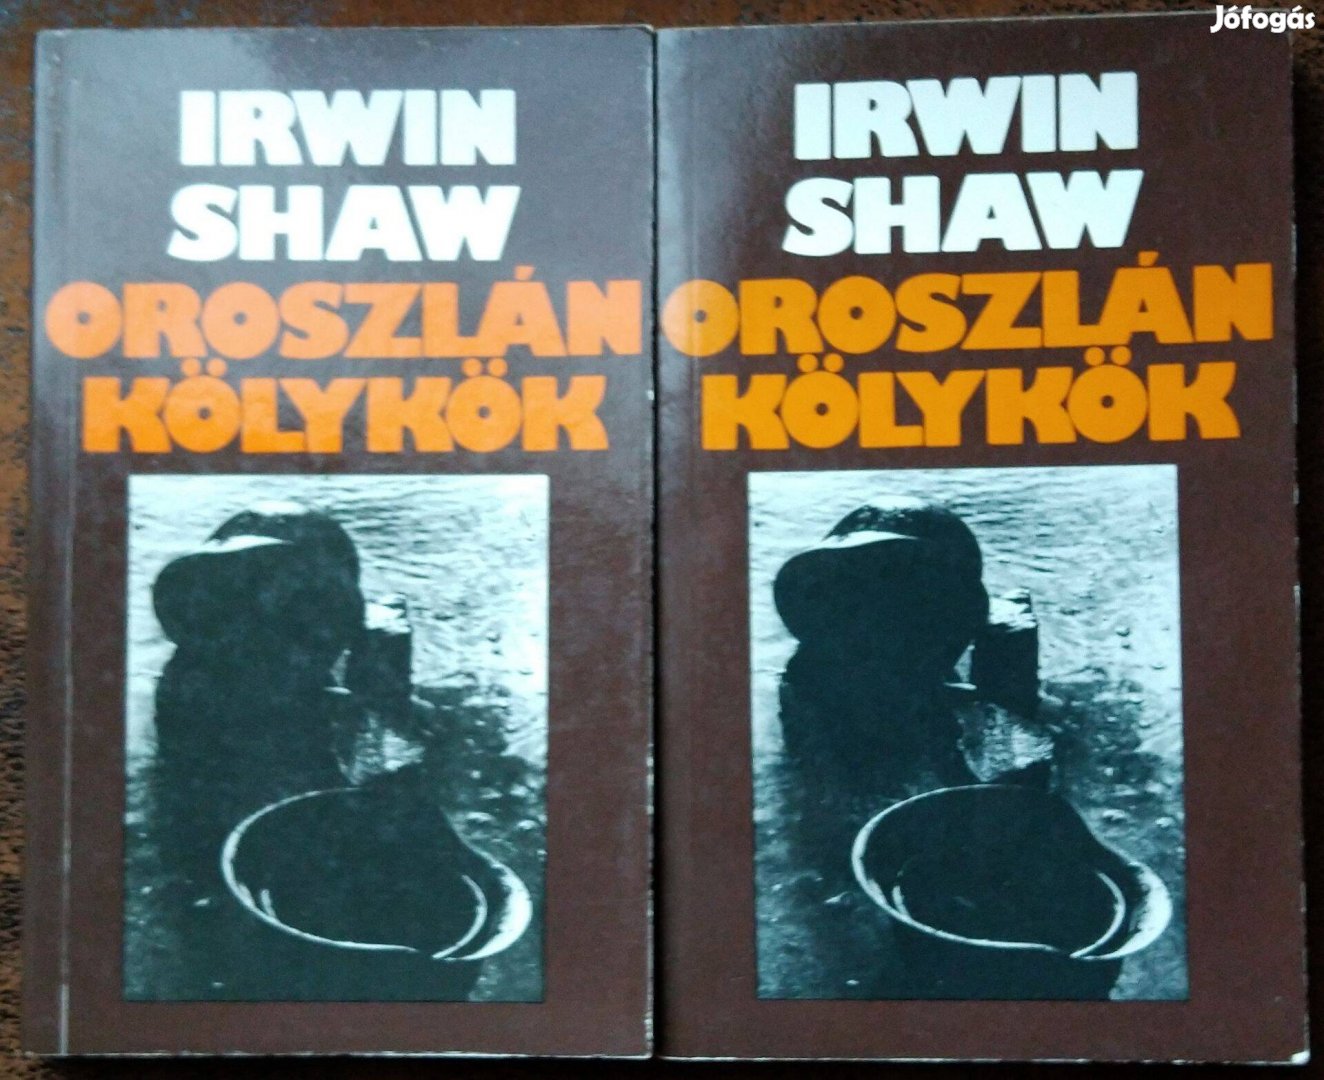 Rwin Shaw Oroszlán kölykök